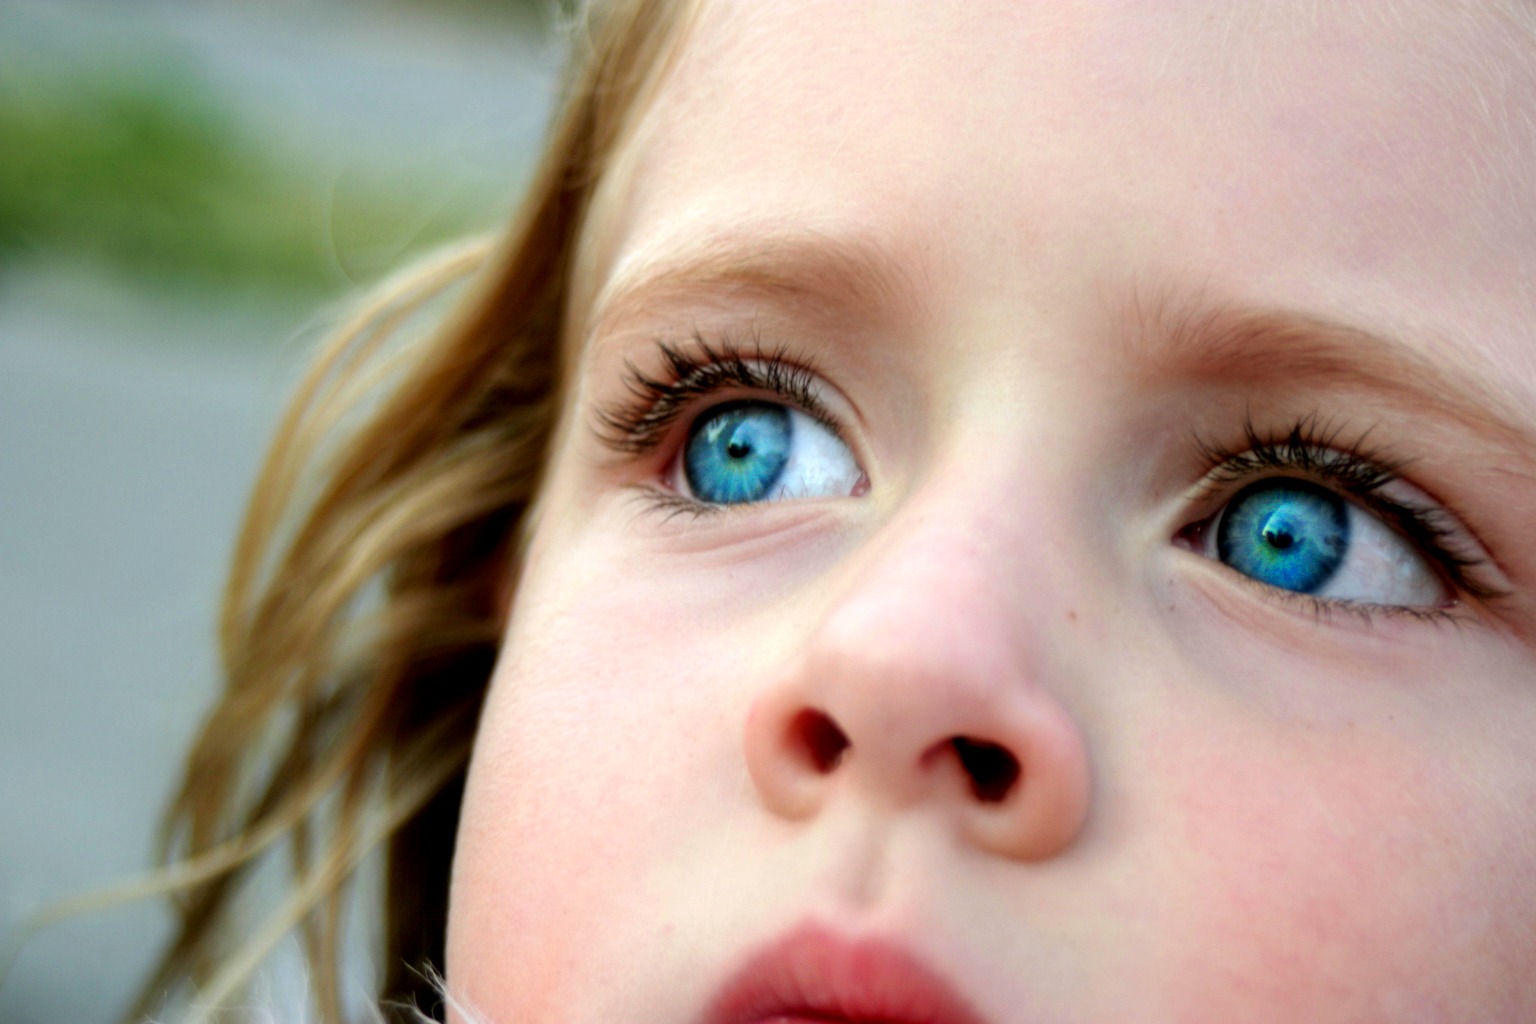 You have beautiful eyes. Глаза ребенка. Голубоглазые люди. Голубые глаза. Синие глаза.